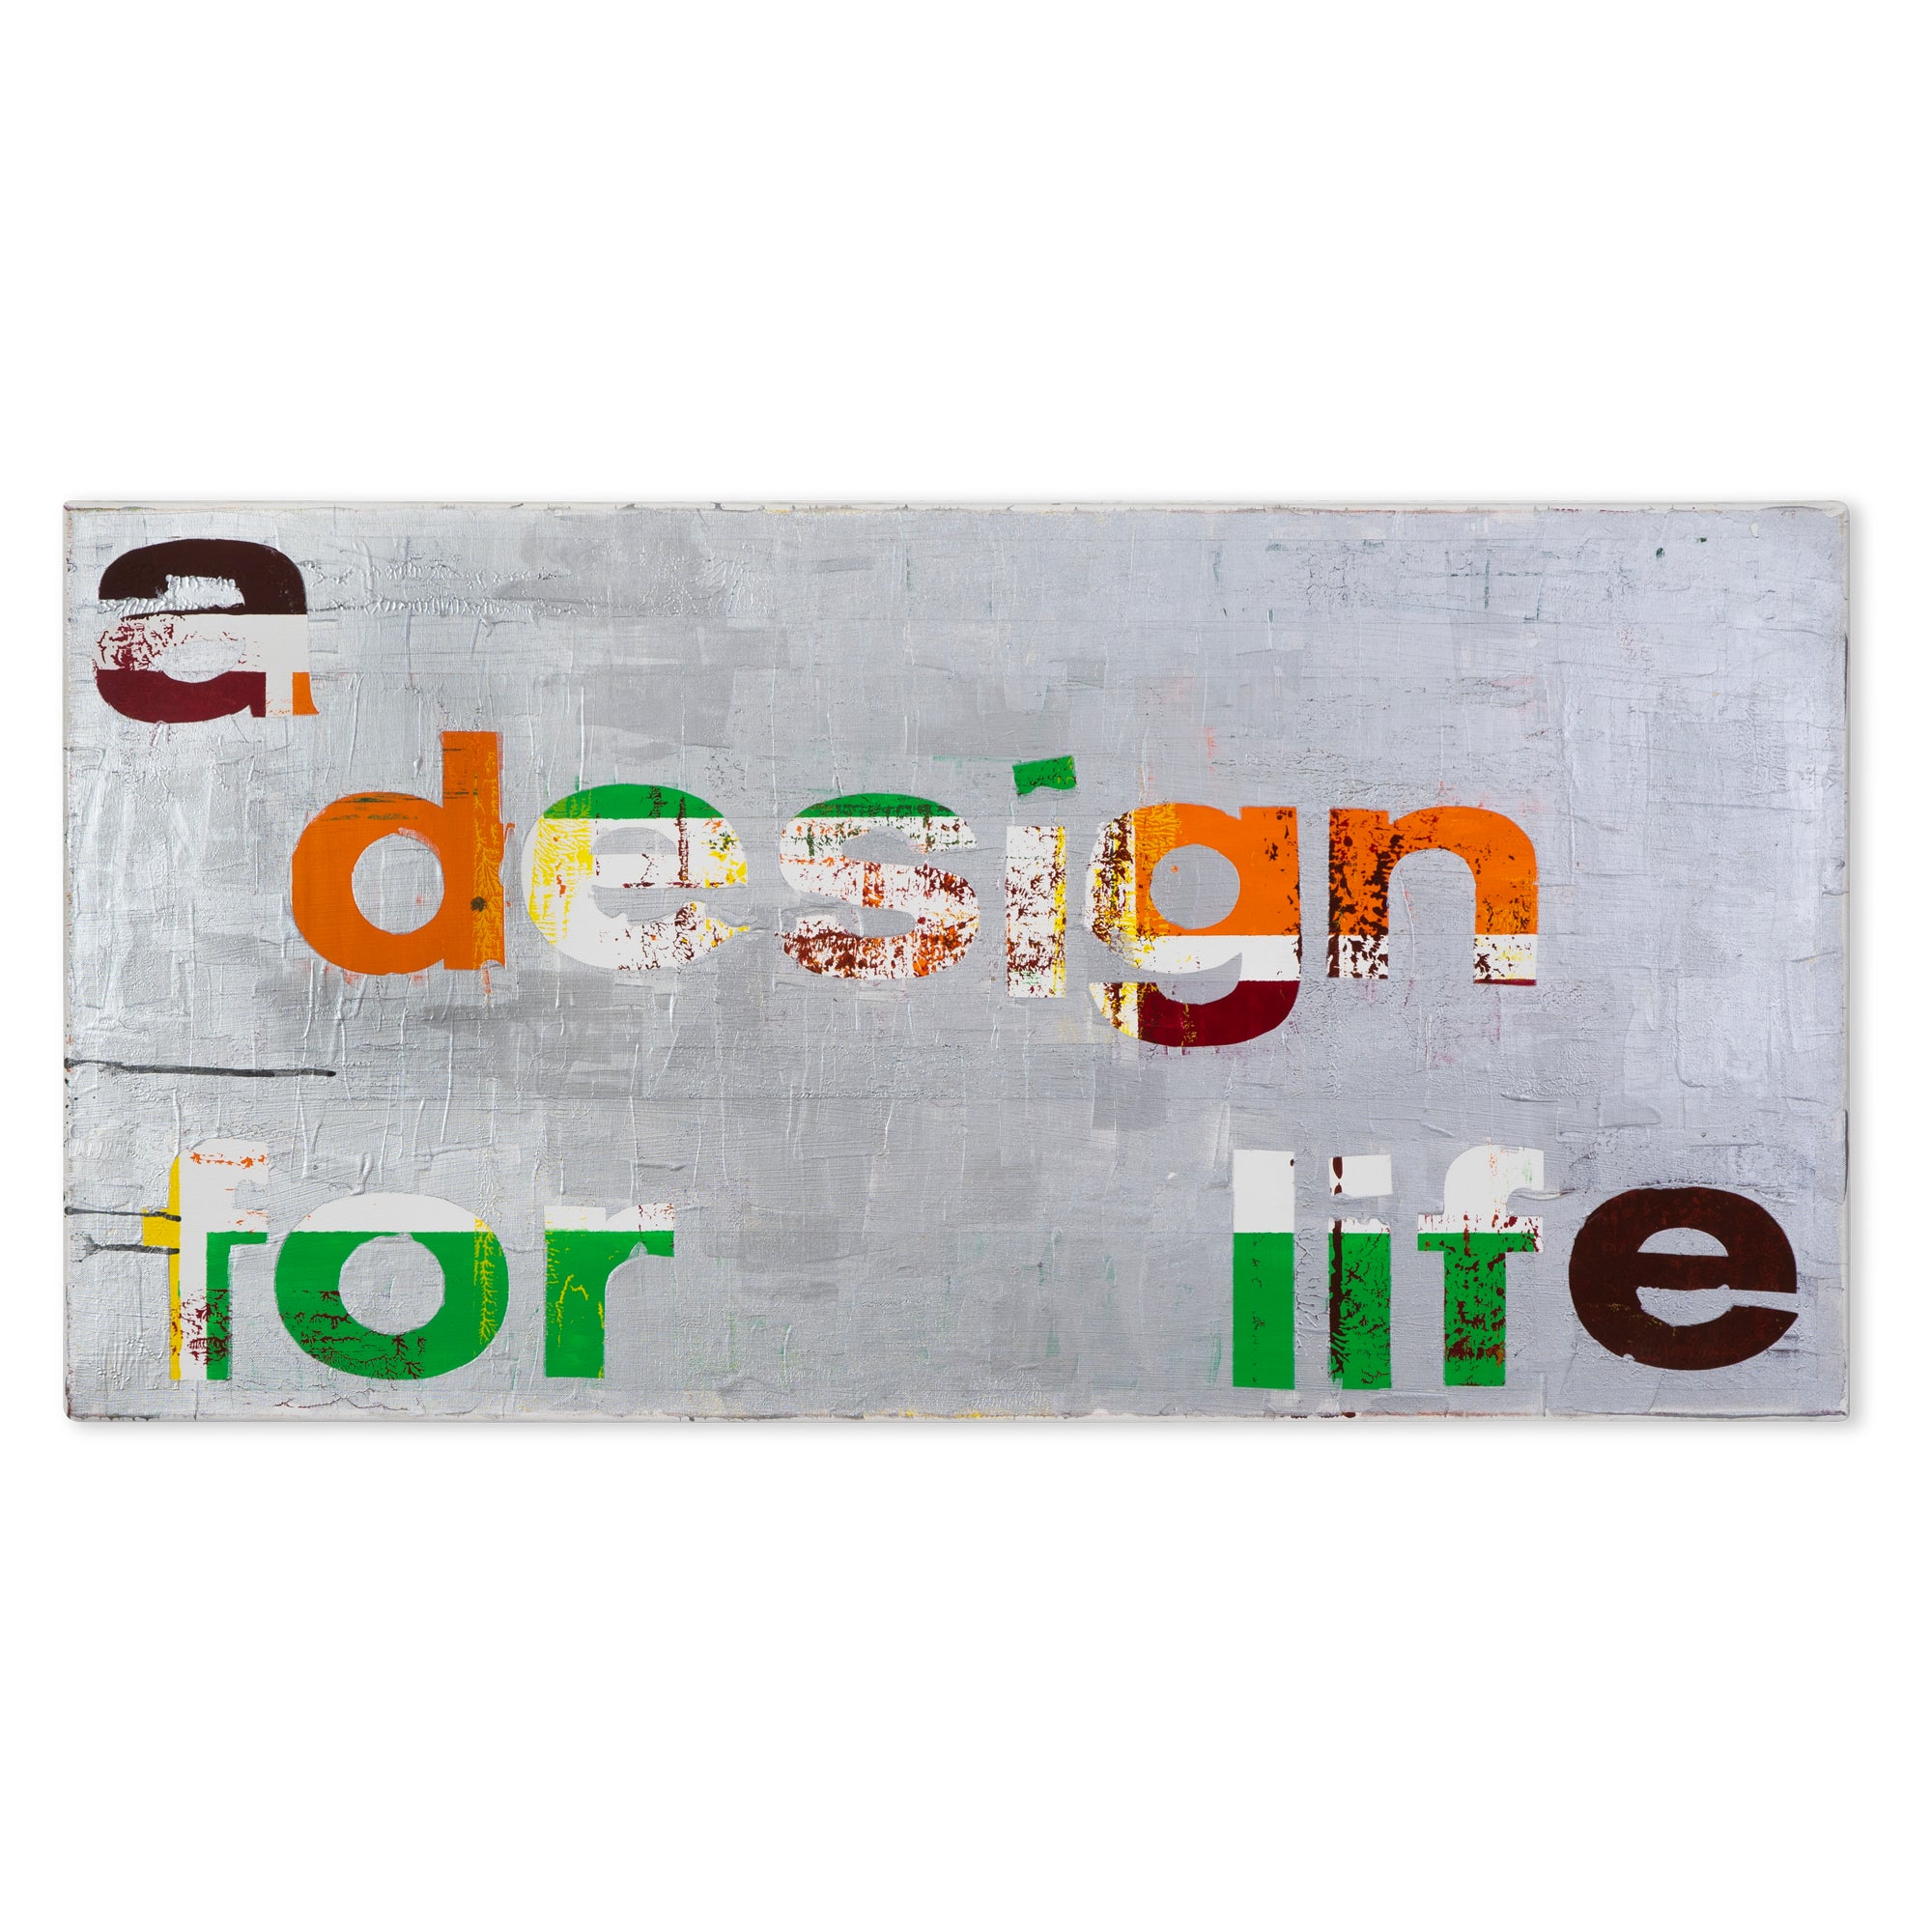 A design for life